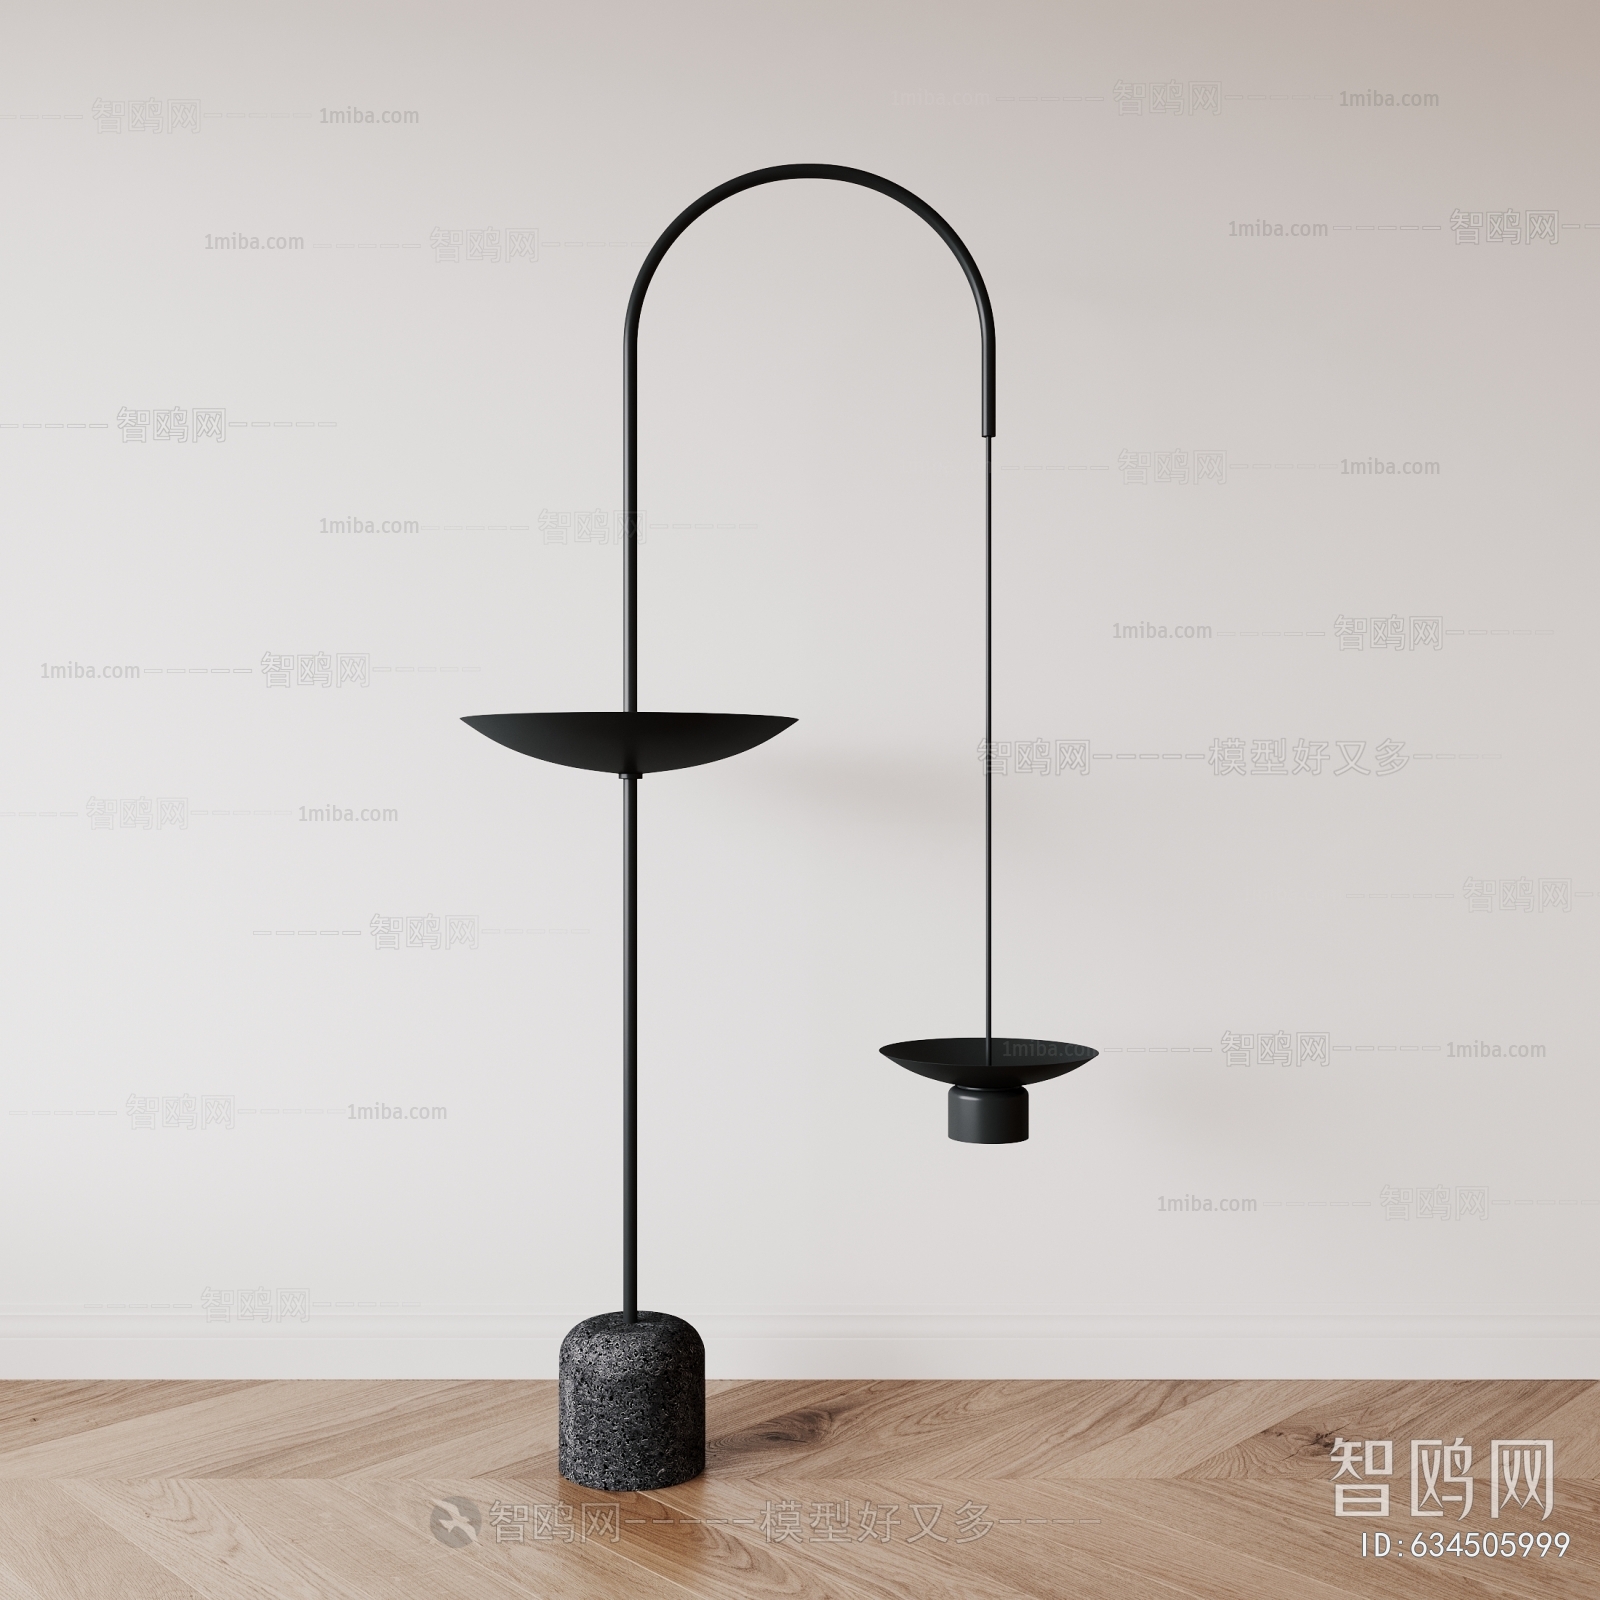 Wabi-sabi Style Fishing Lamp